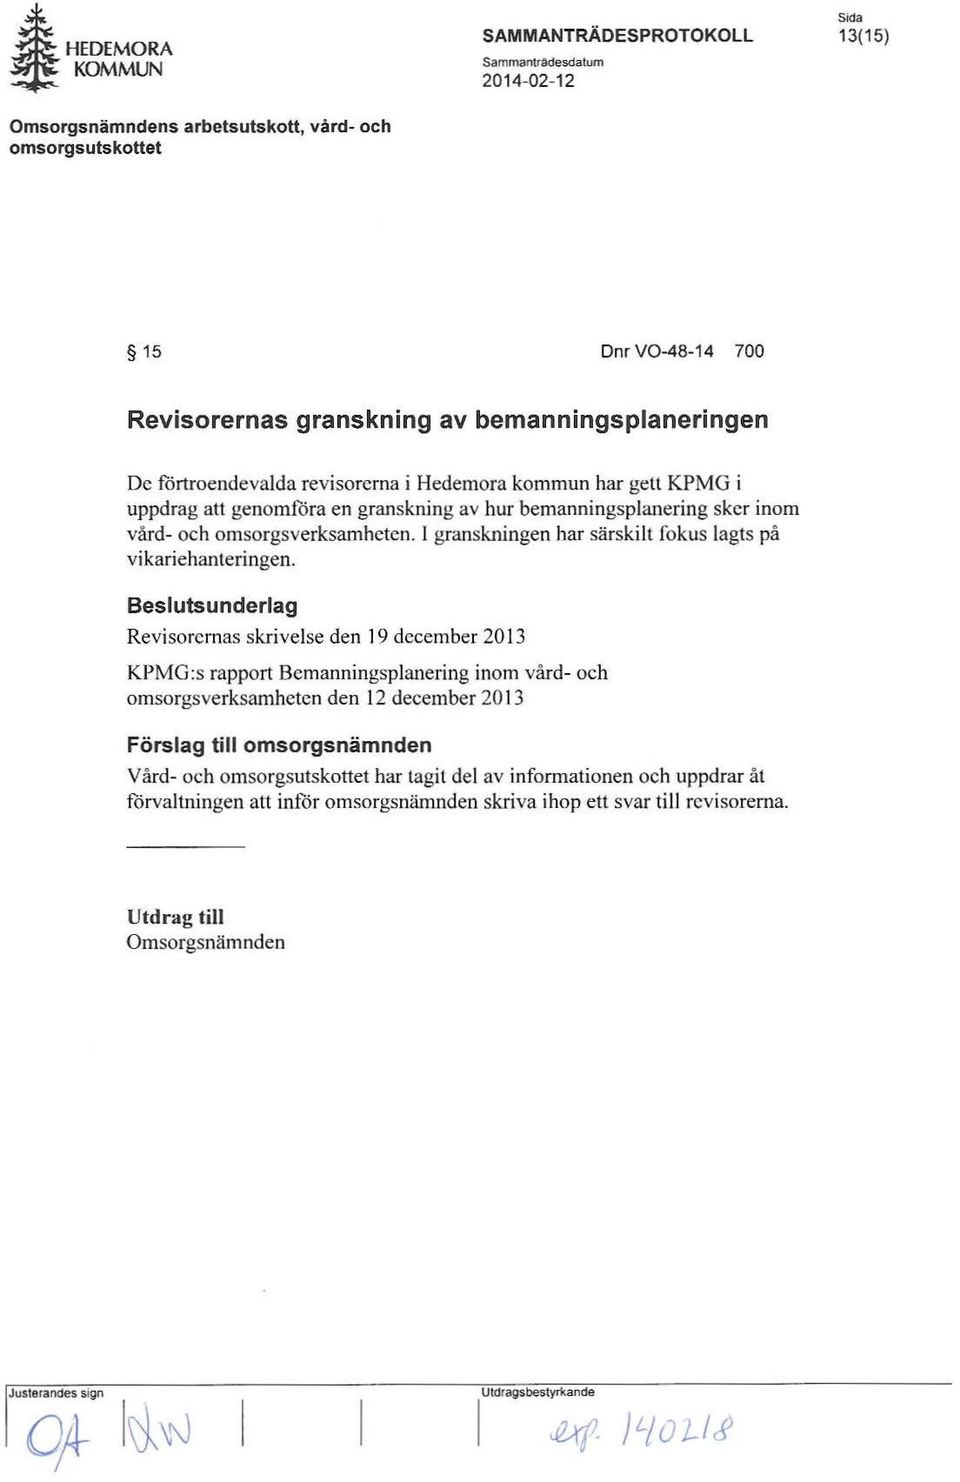 Besluts underlag Revisorernas skrivelse den 19 december 2013 KPMG:s rapport Bemanningsplanering inom vård- och omsorgs verksamheten den 12 december 2013 Förslag